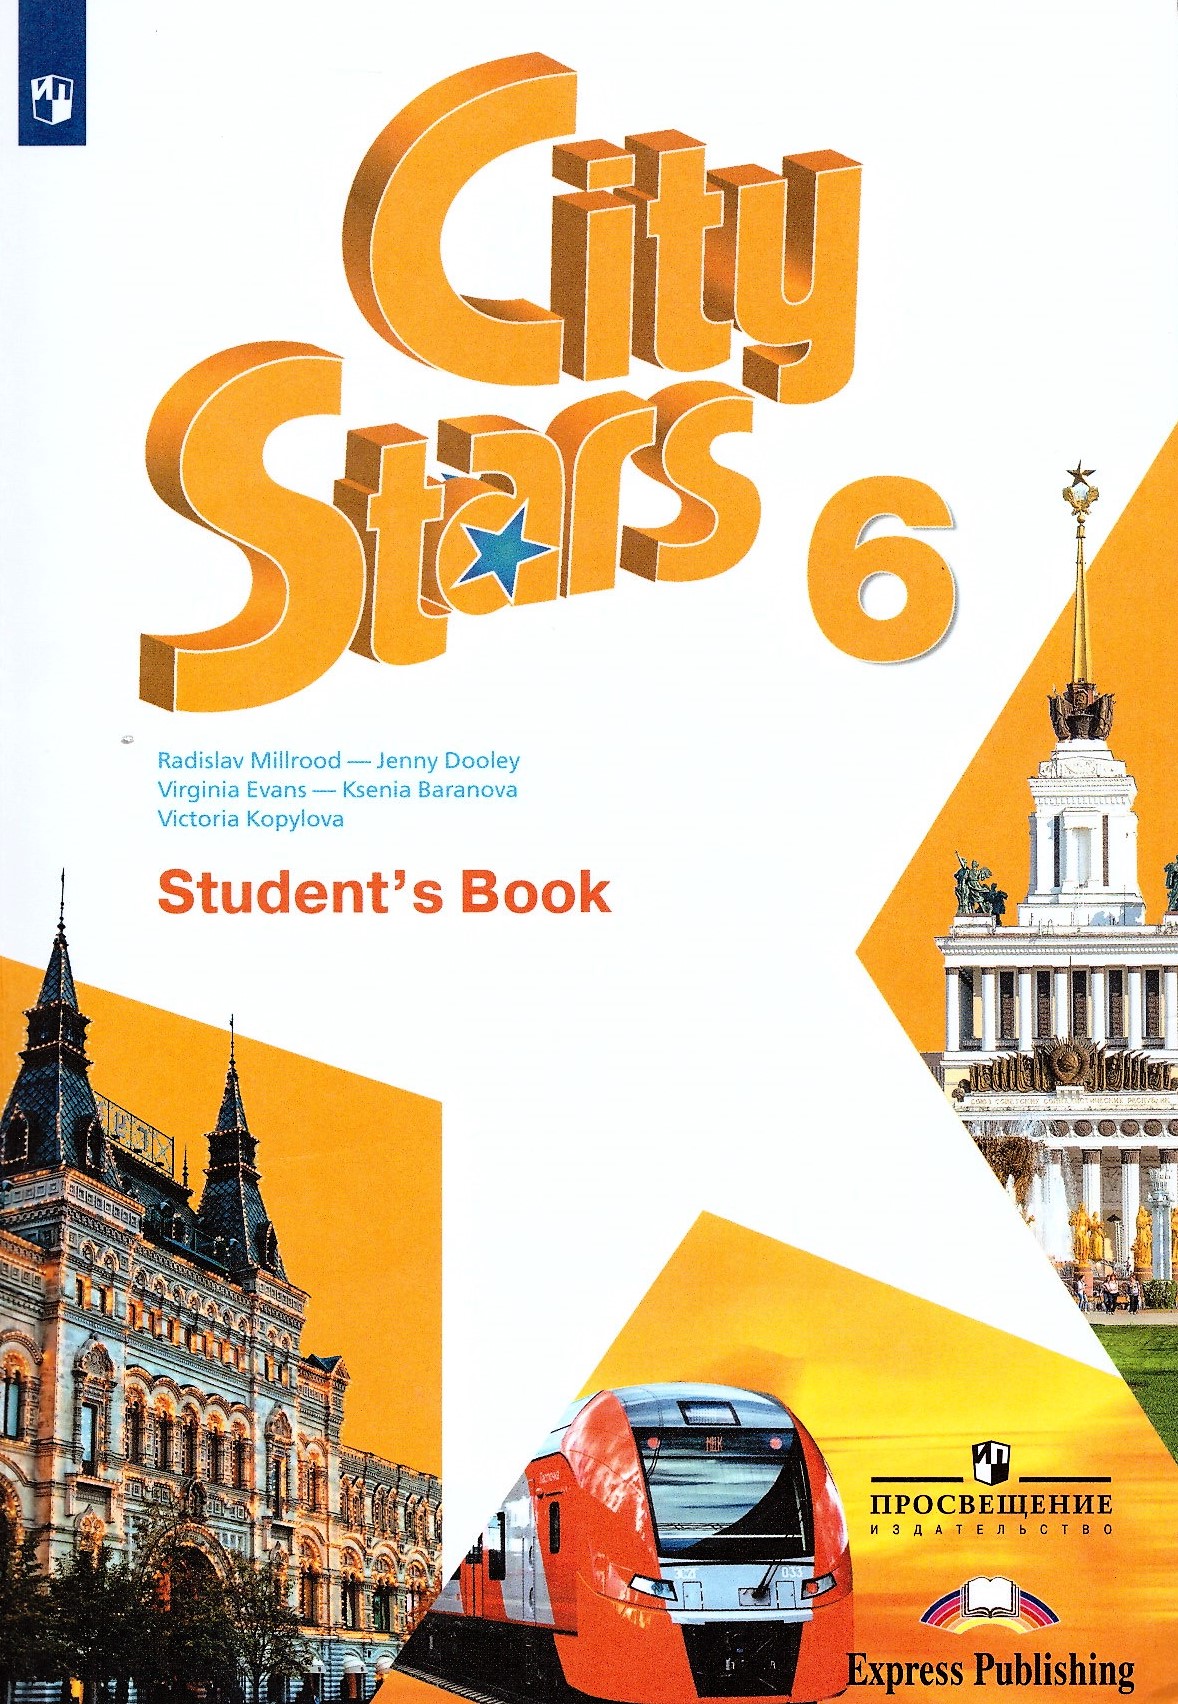 Ситистар 9 класс. Английский 6 класс учебник City Stars 6. City Stars учебник английского языка. Учебник по английскому языку. Английский язык. Учебник.